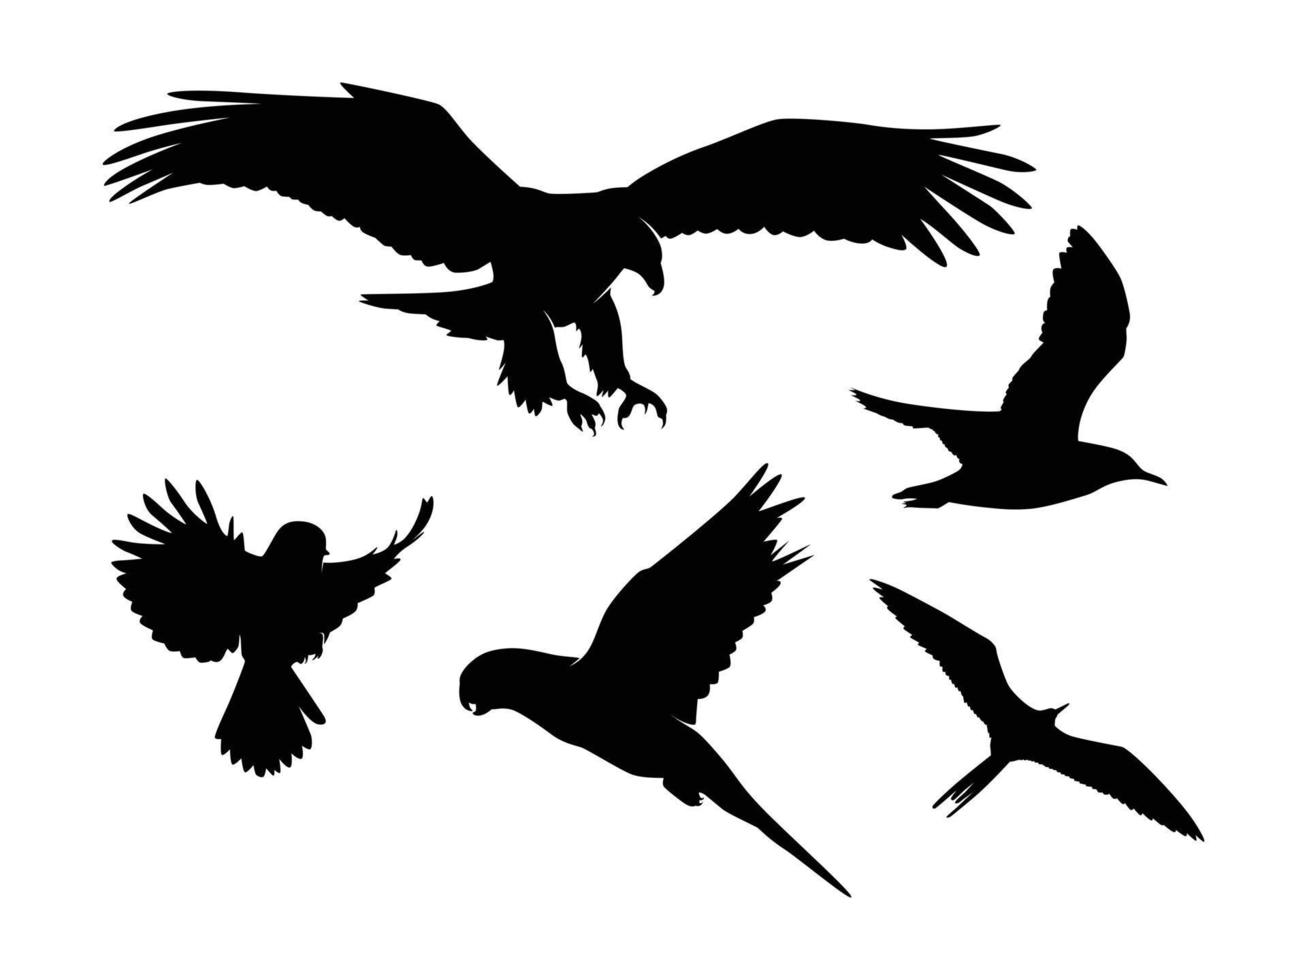 ensemble de silhouette d'oiseaux isolé sur fond blanc - illustration vectorielle vecteur